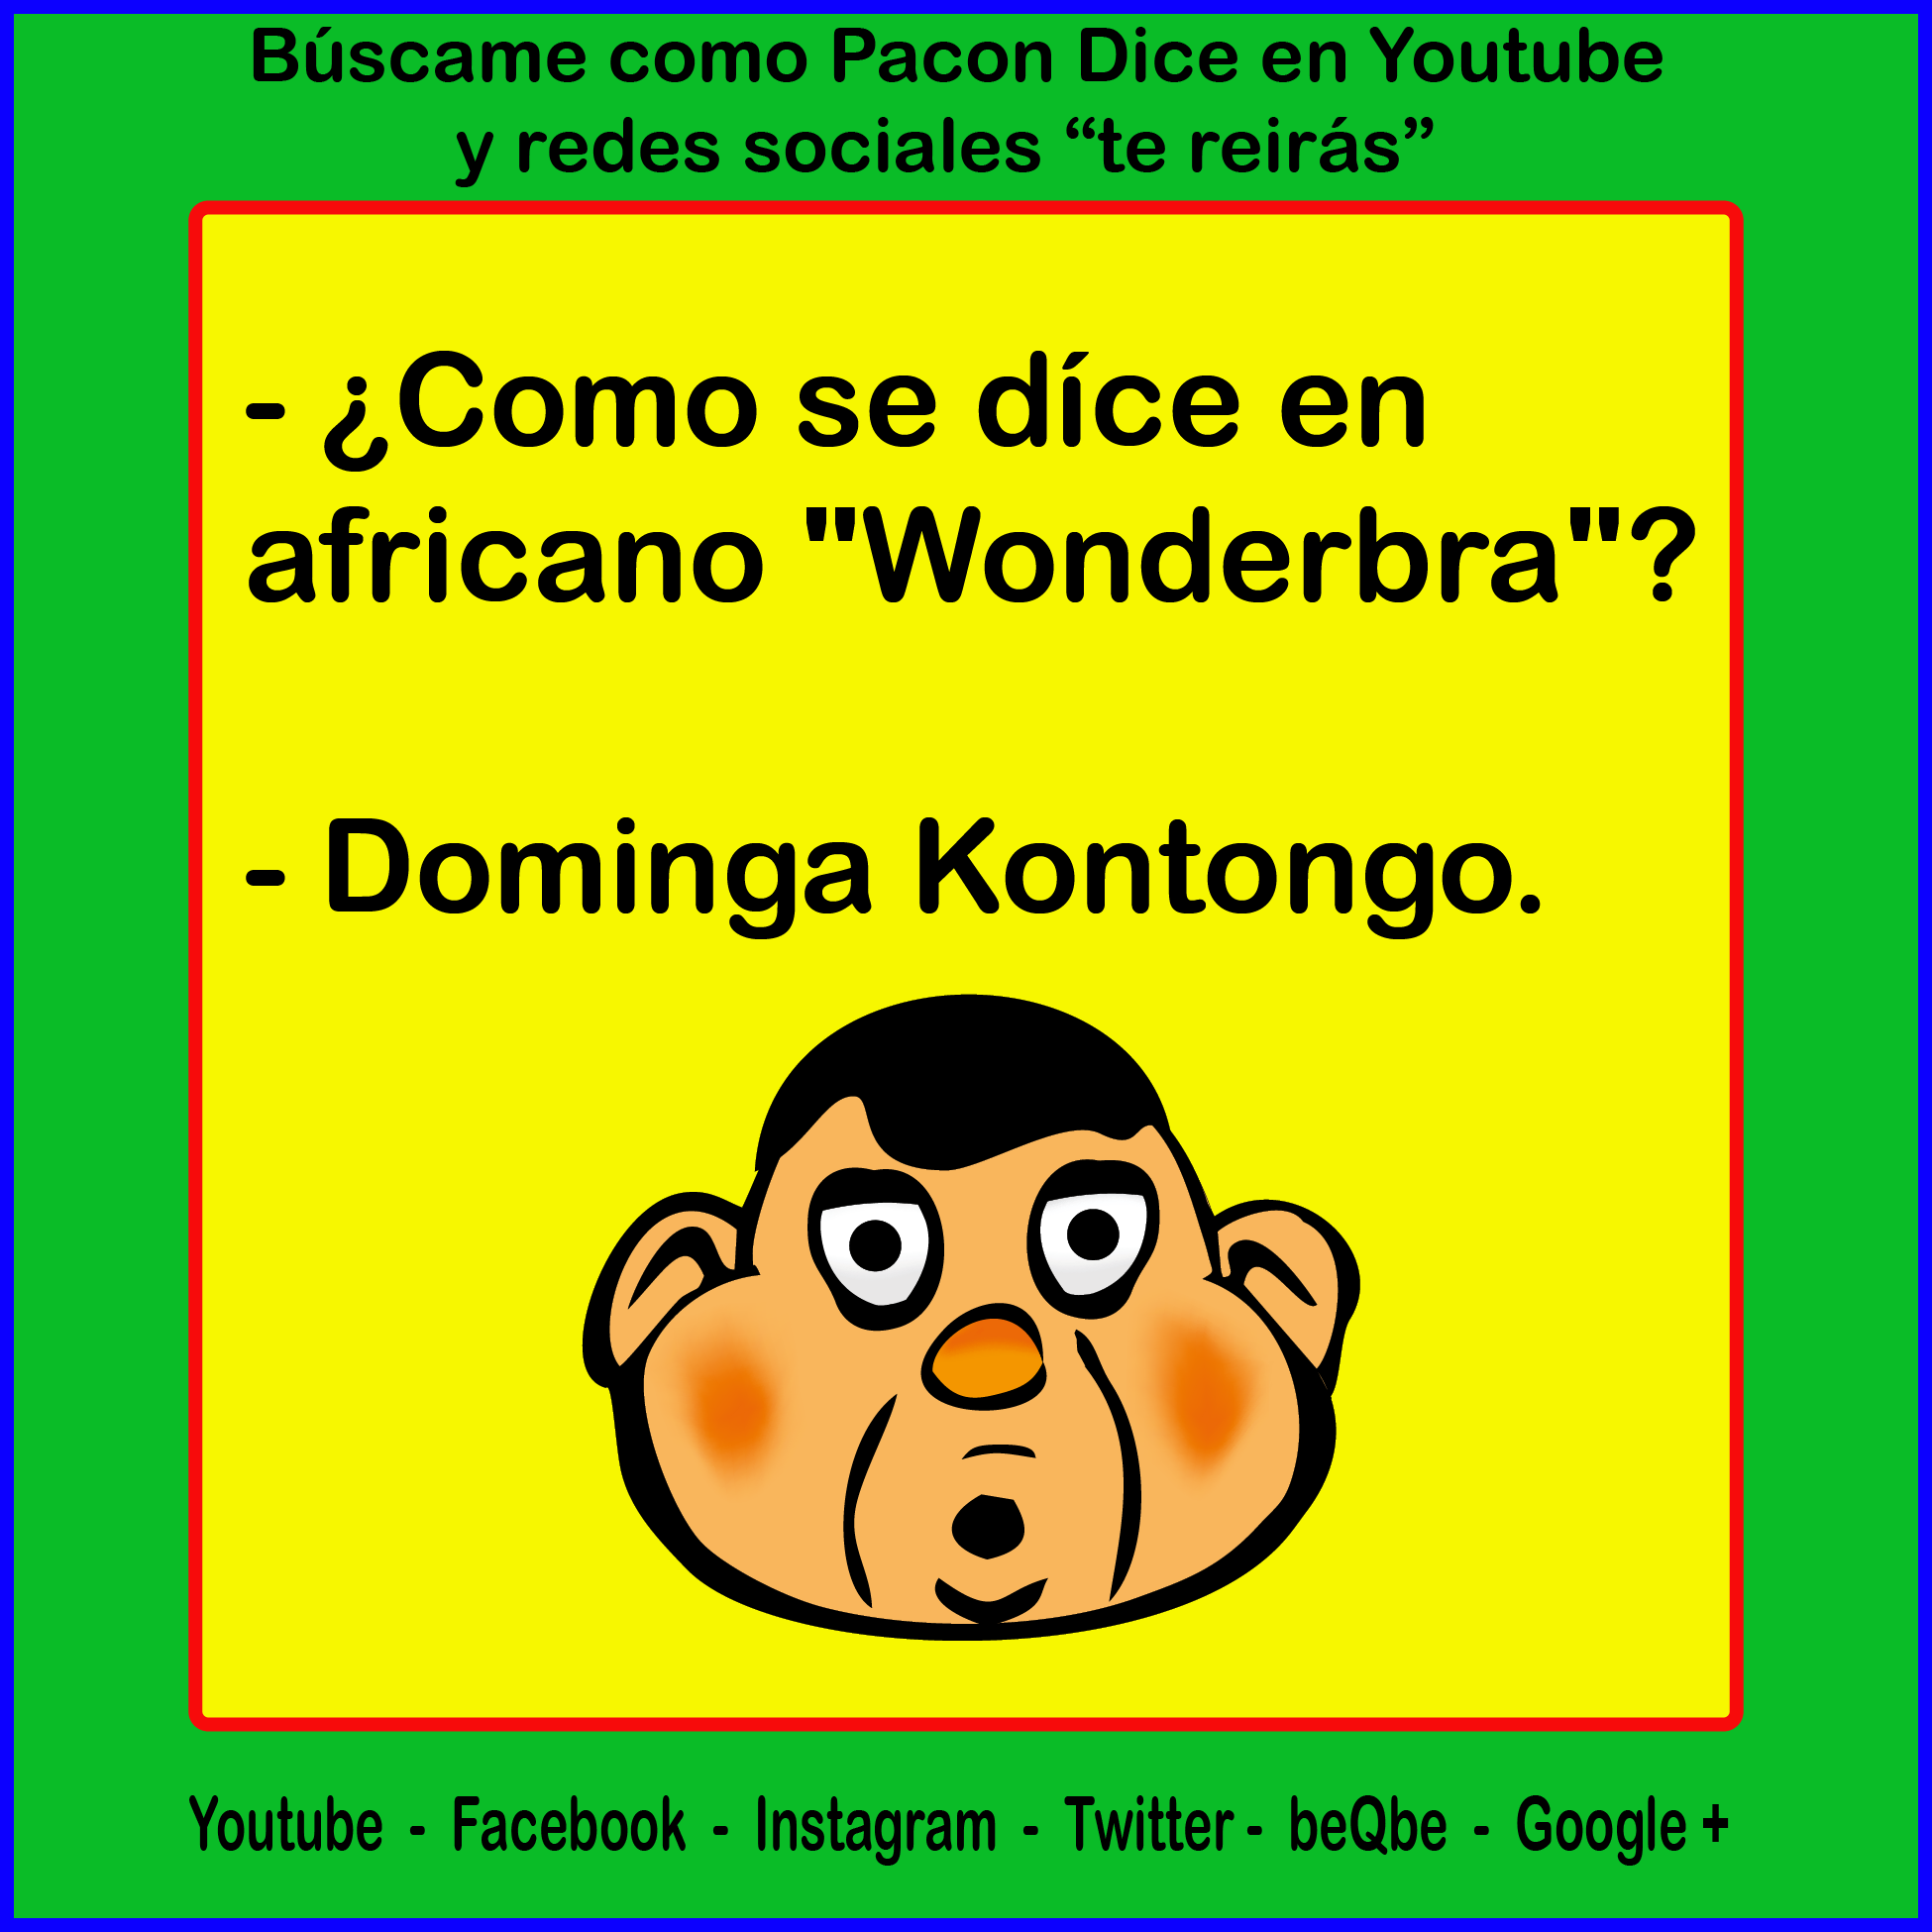 ¿Como se dice en africano "Wonderbra"? domingas kontongo